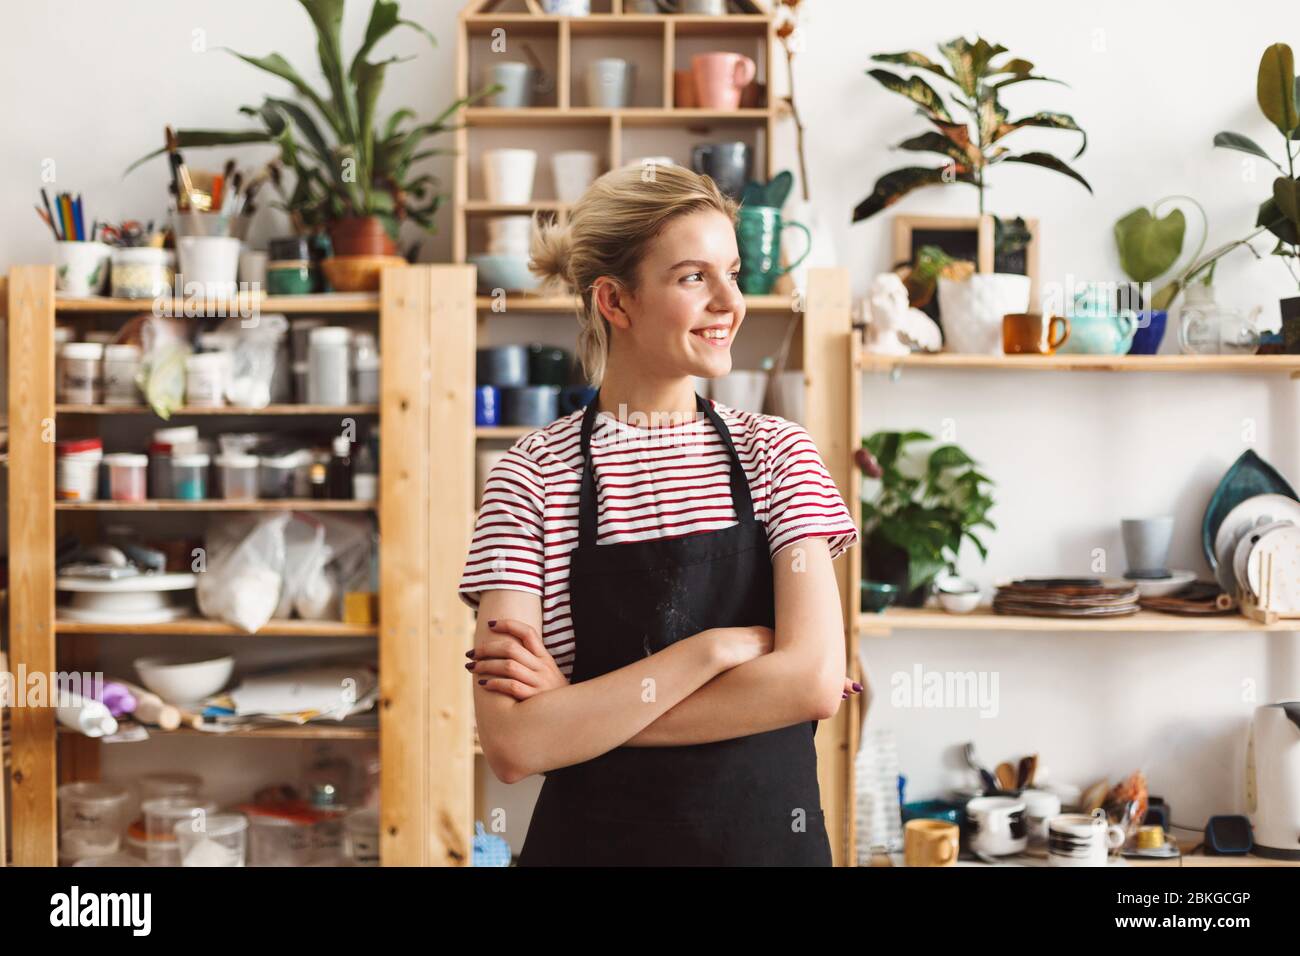 Chica sonriente en delantal negro y camiseta felizmente mirando a un lado con platos hechos a mano en estantes en el fondo en el estudio de cerámica Foto de stock